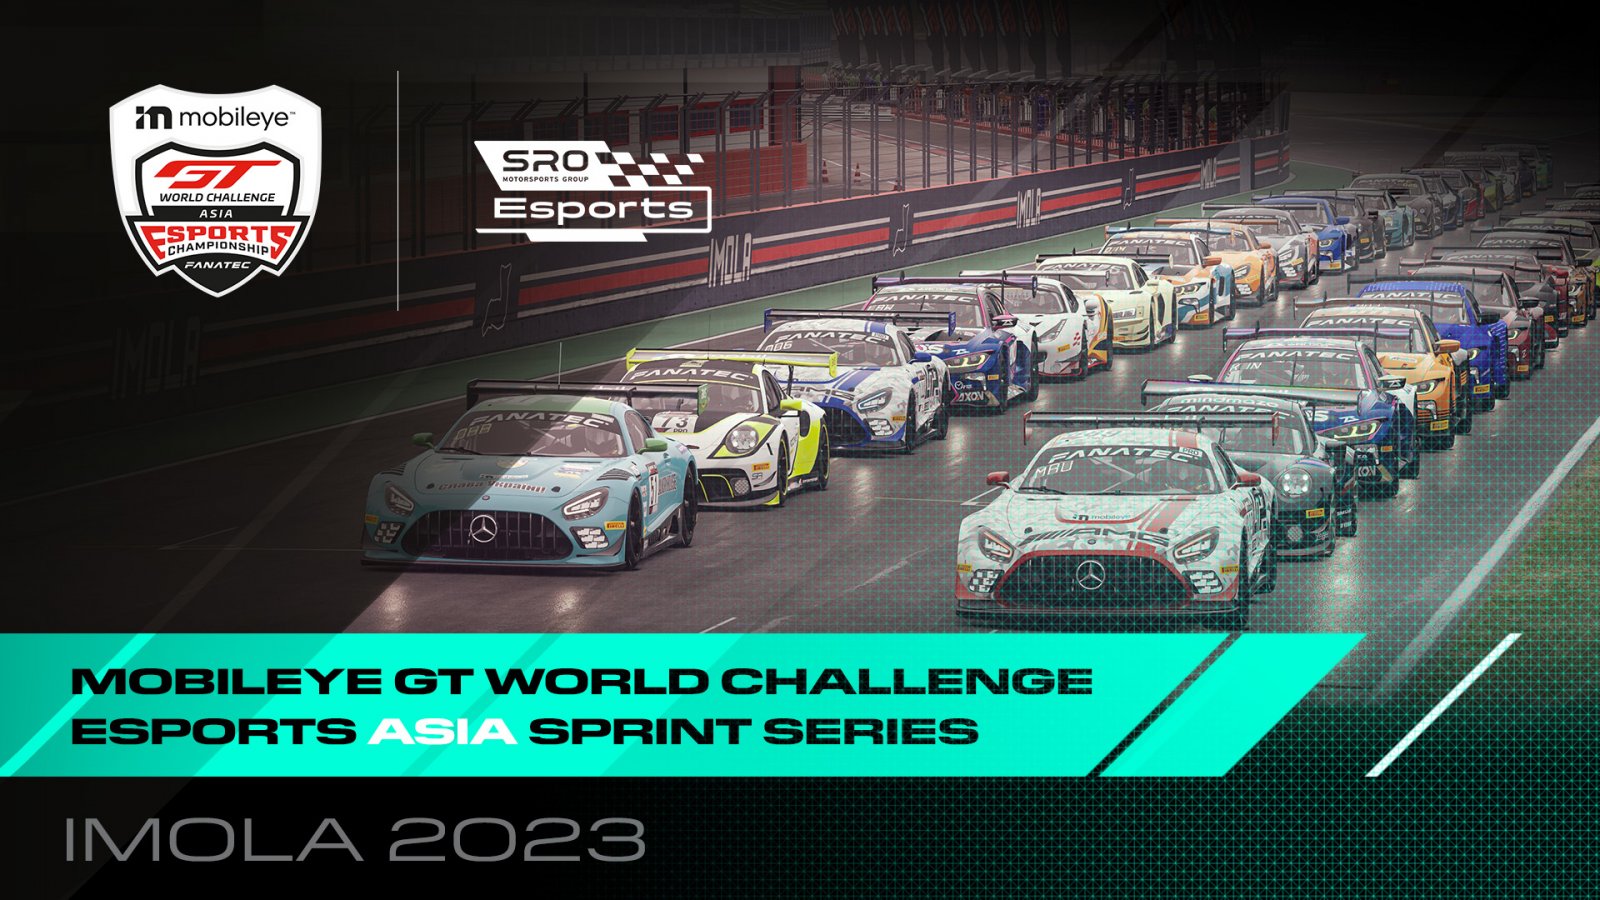 SRO E-sports - Imola to kick-start season three of the Mobileye GT World Challenge Esports Asia Sprint Series